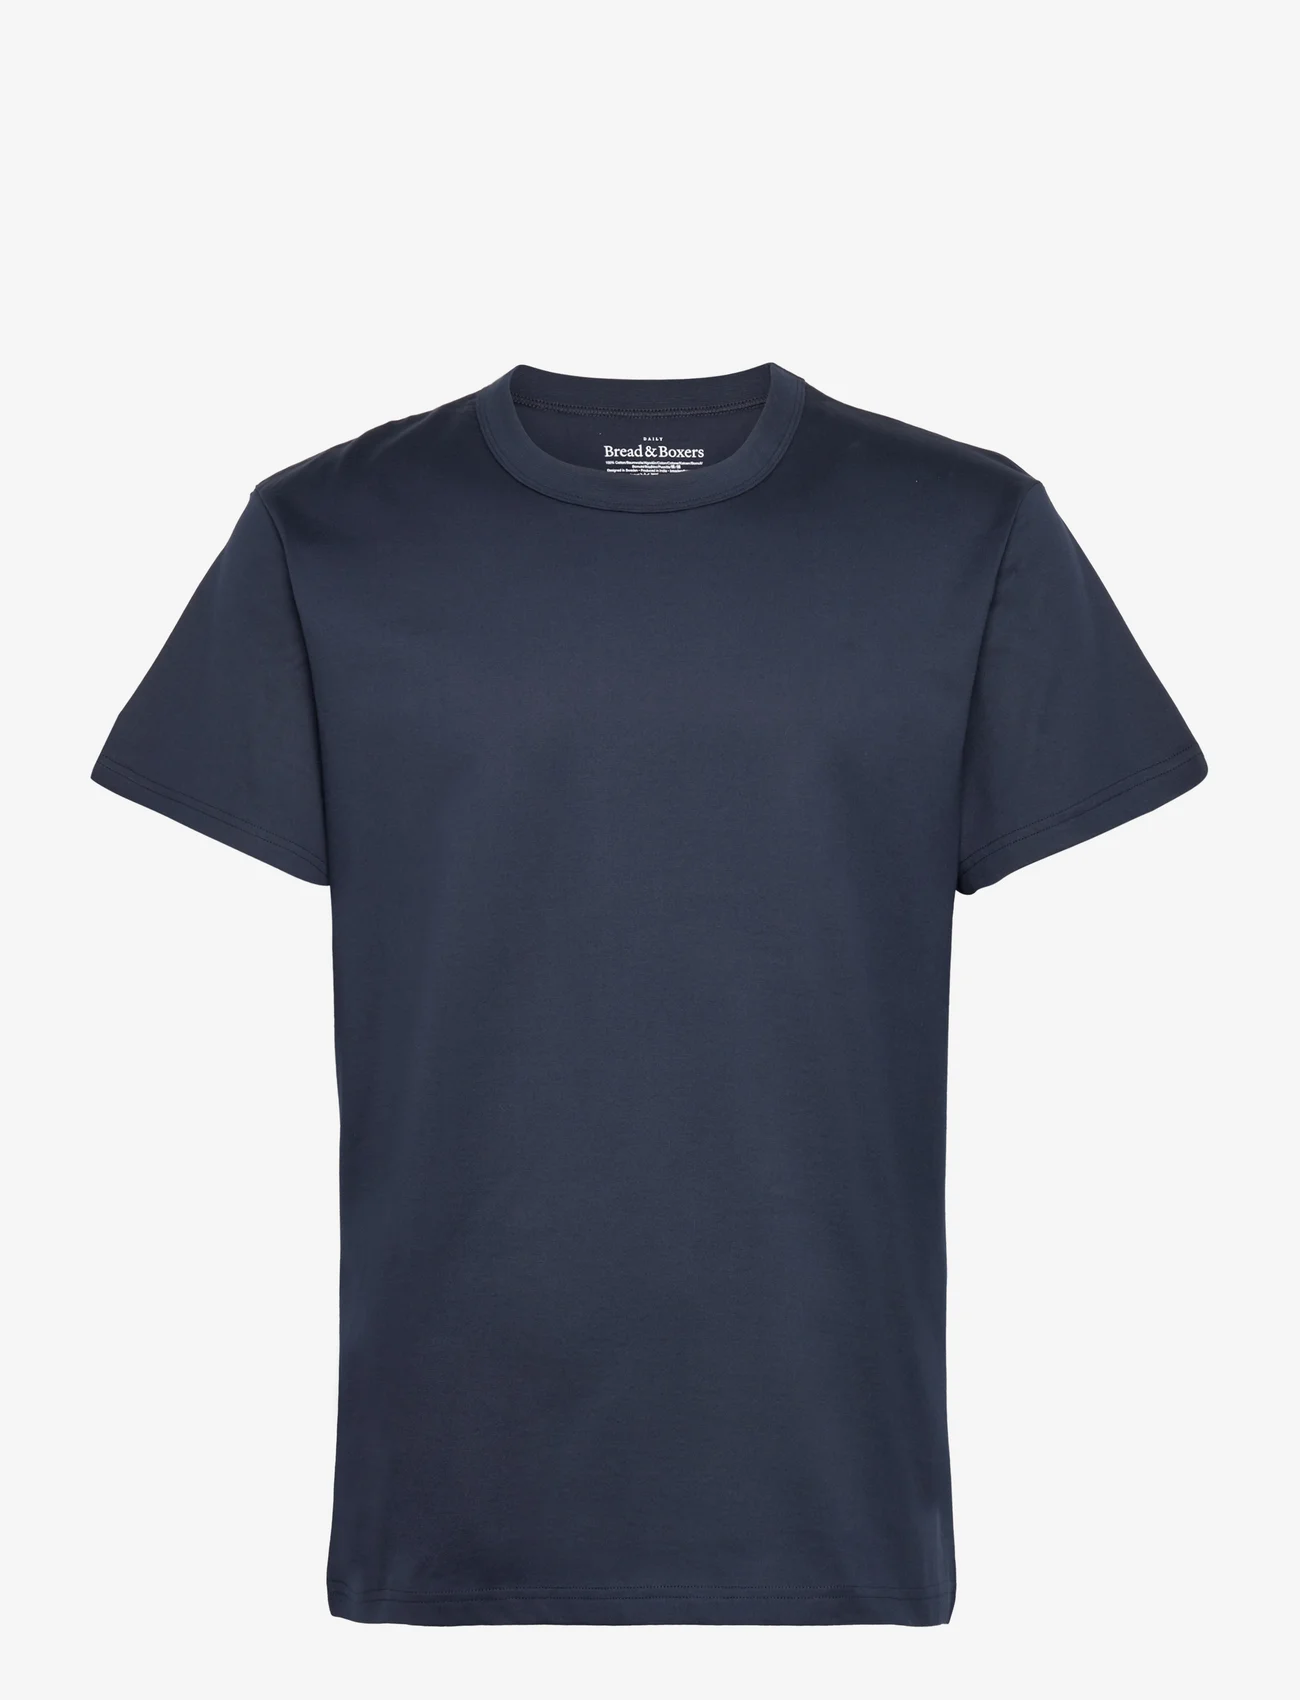 Bread & Boxers - Crew Neck PIma - laisvalaikio marškinėliai - navy blue - 0